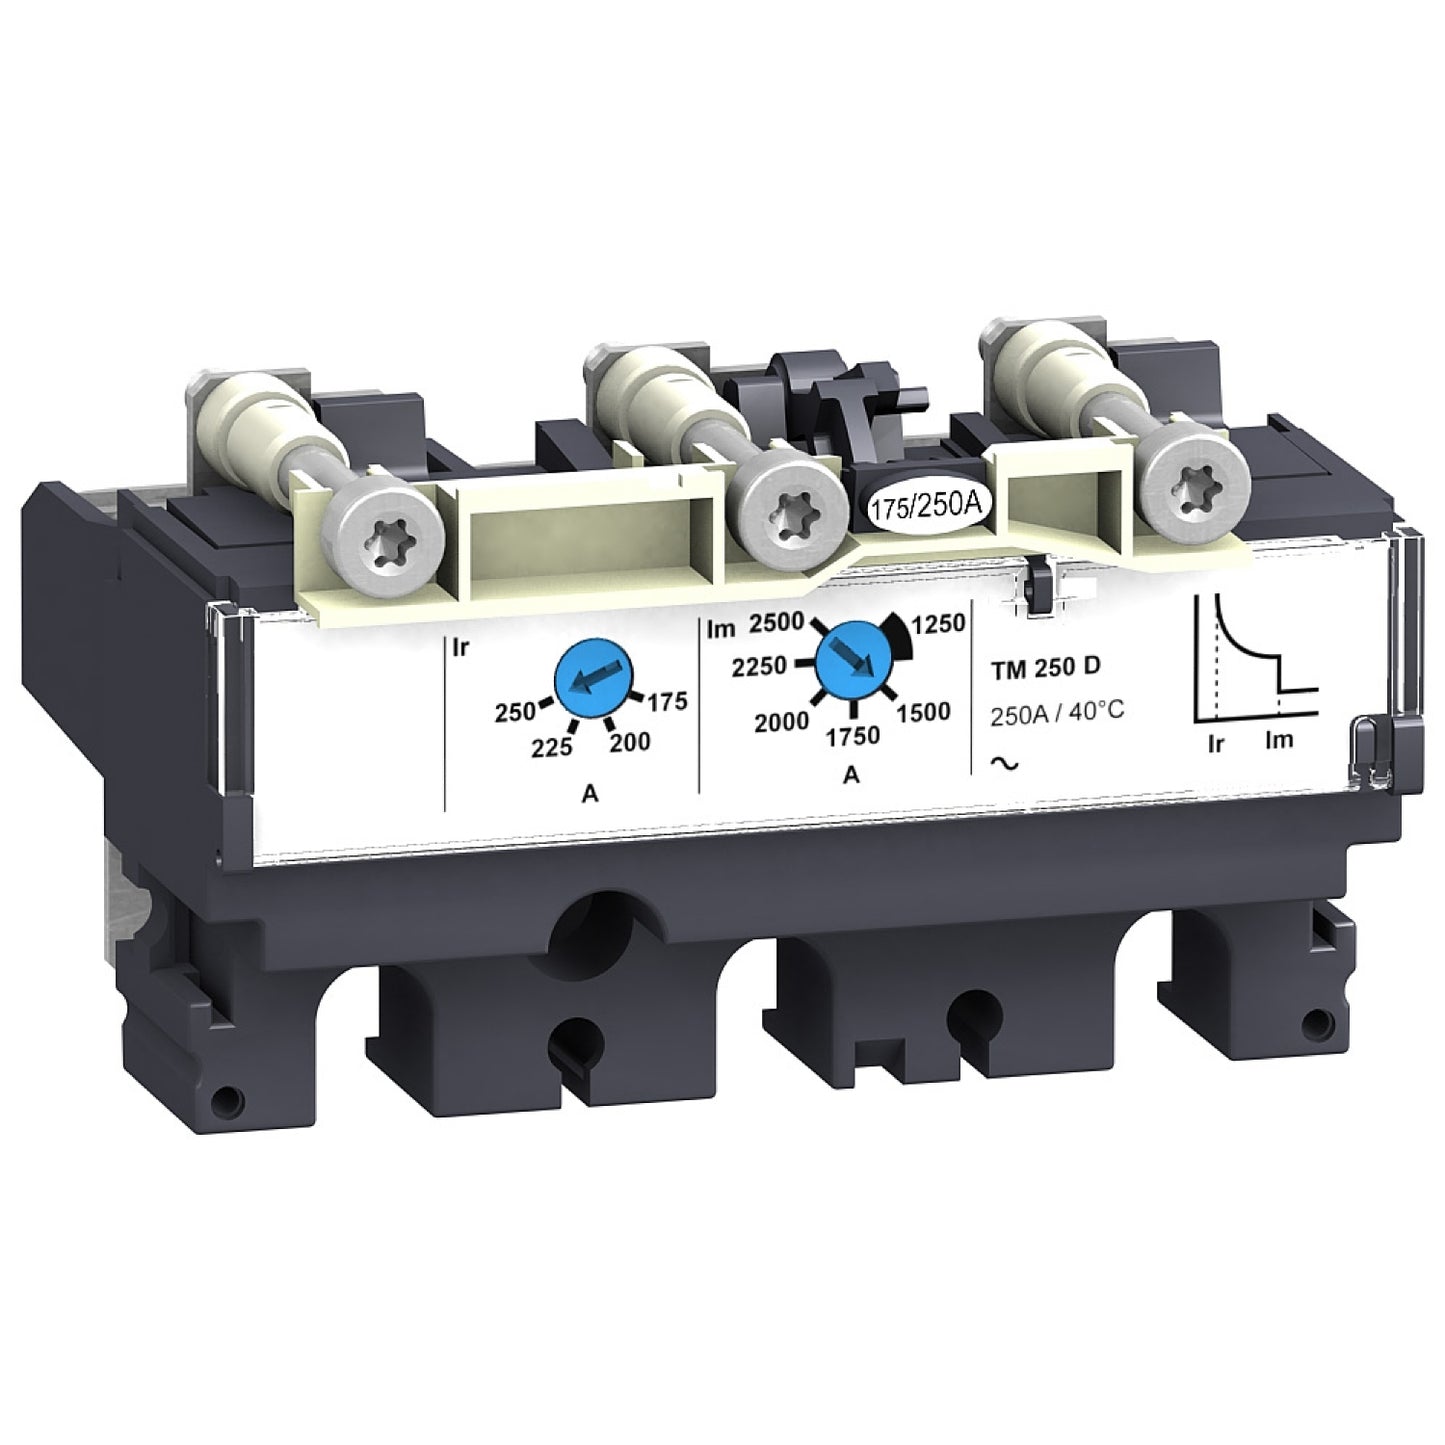 LV430430 Trip unit TM160D for NSX160 circuit breakers